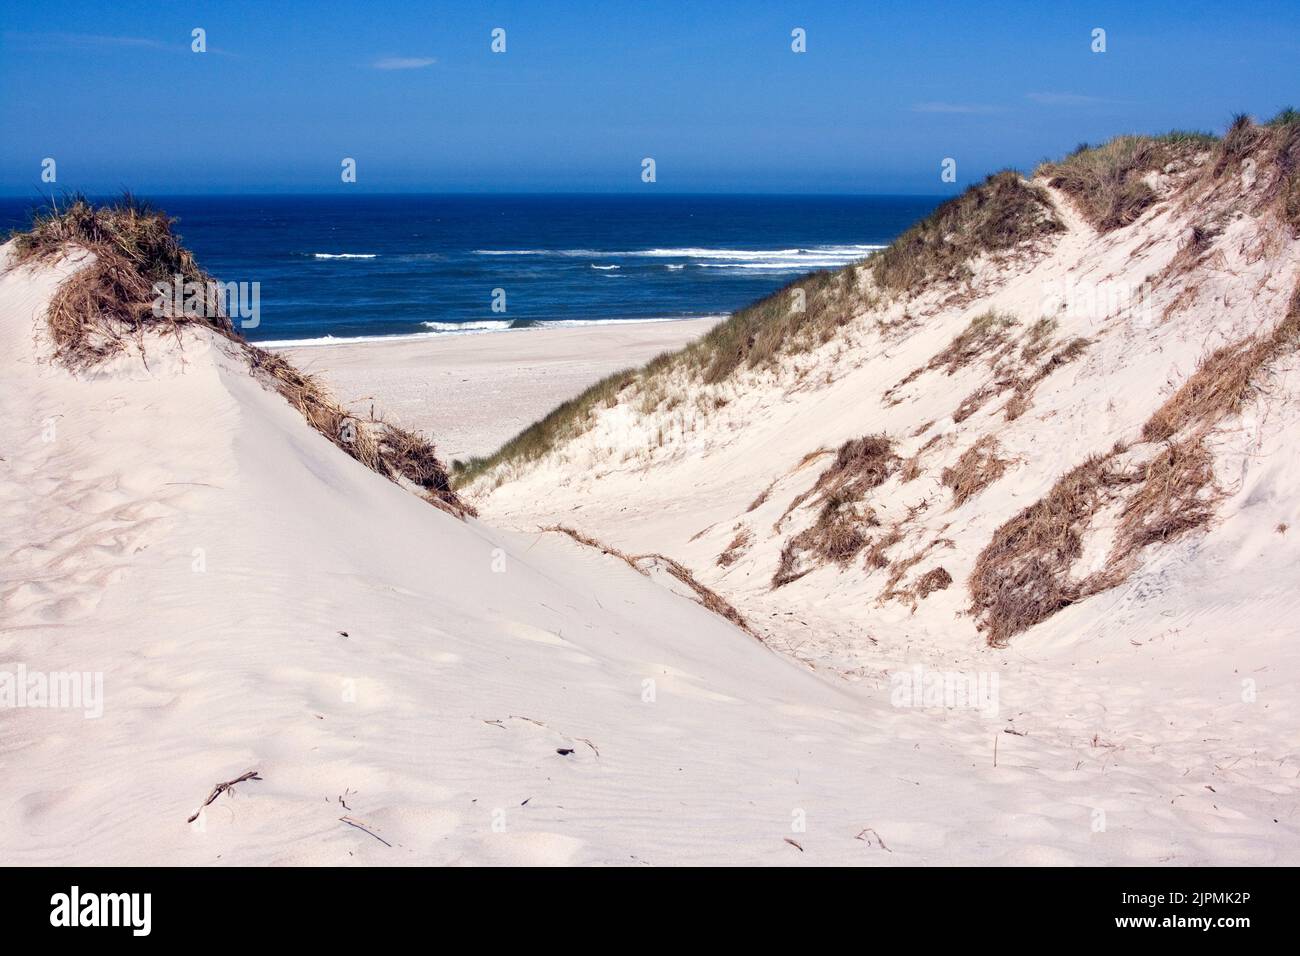 Blick durch einen Dünen-Einschnitt auf den Nordsee-Strand (Holmsand-Klit bei Nymindegab) x v-shaped pass through dunes at Holmsand-Klit bei Nymindegab Stock Photo